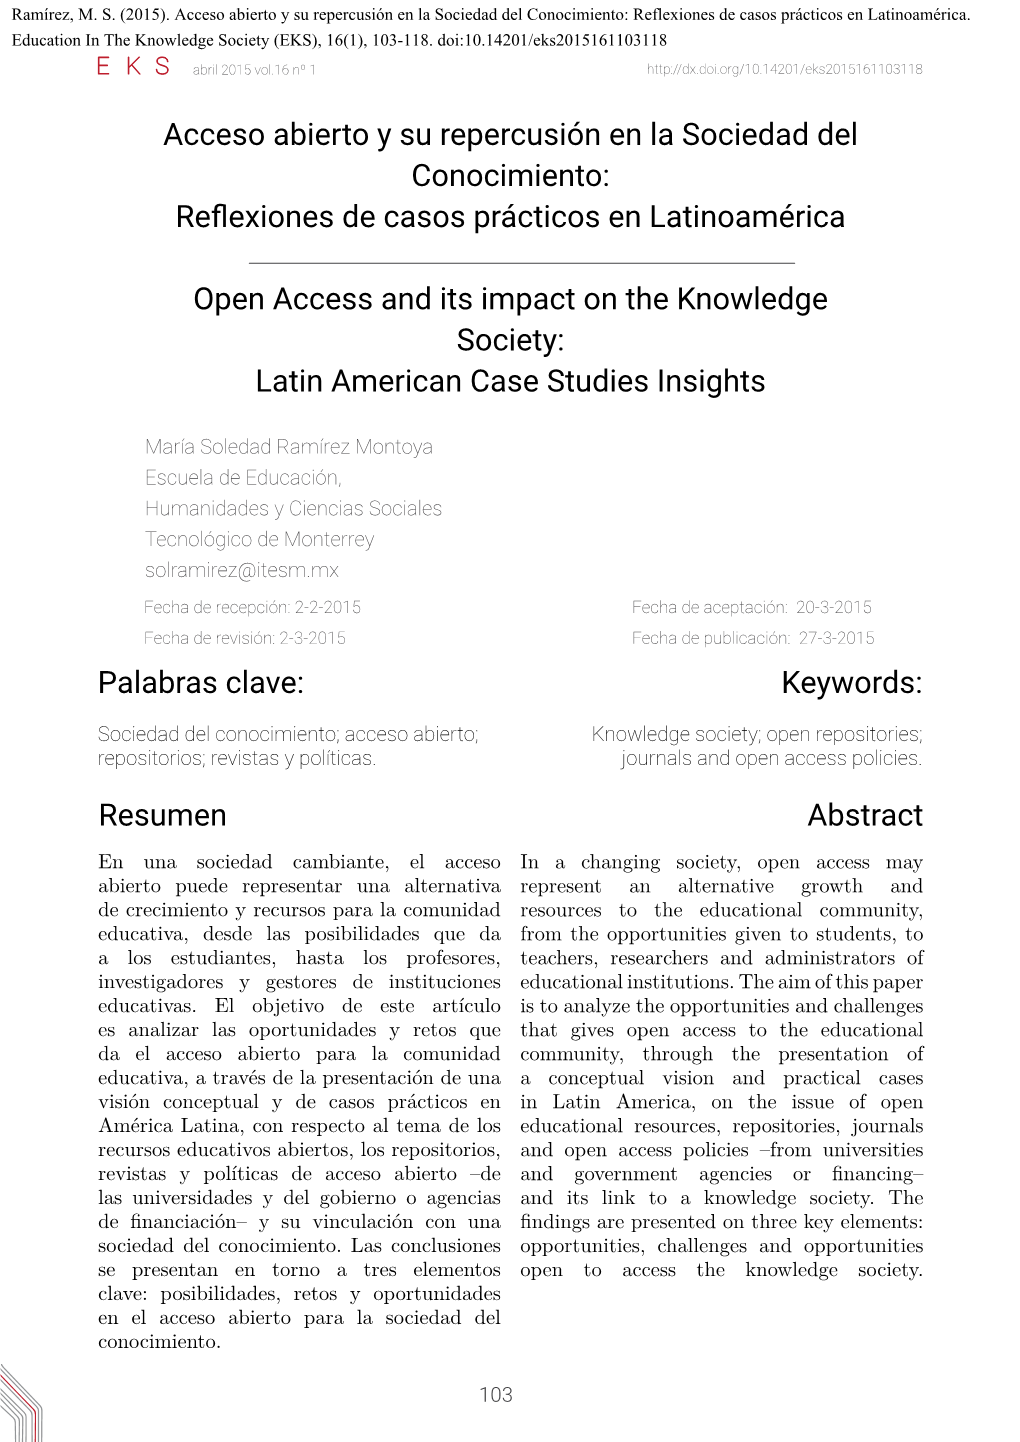 Acceso Abierto Y Su Repercusión En La Sociedad Del Conocimiento: Reflexiones De Casos Prácticos En Latinoamérica